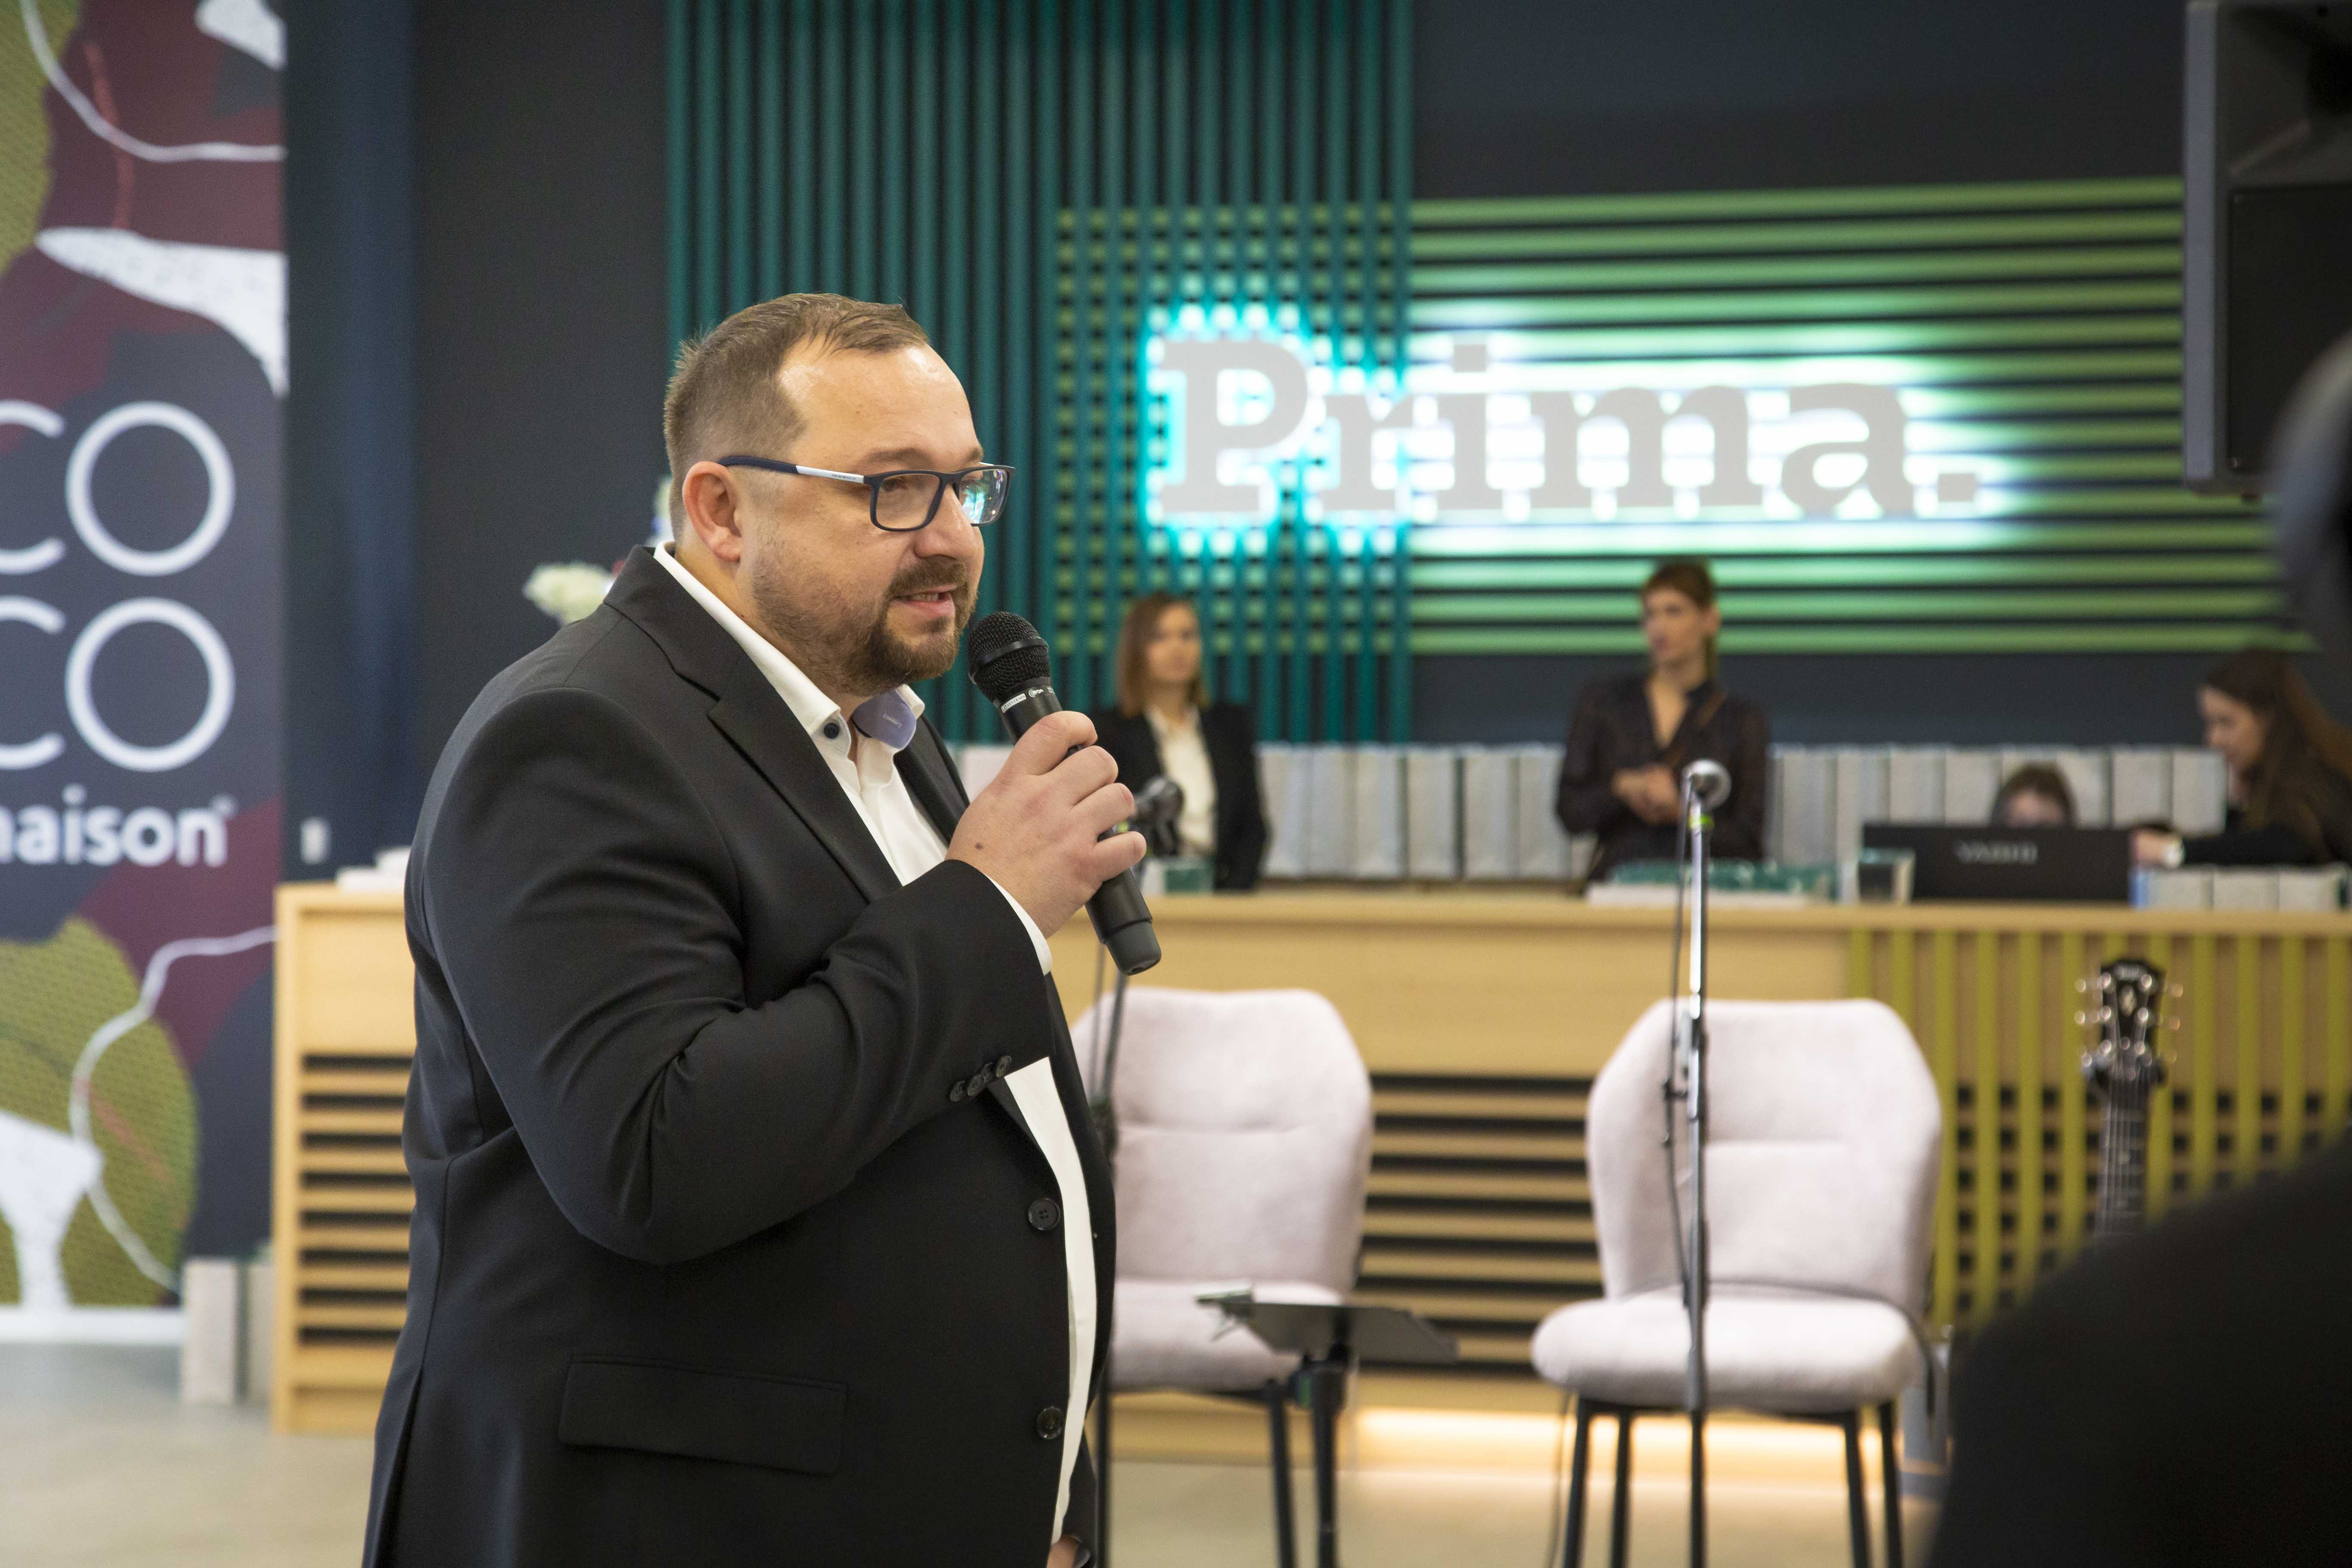 Prima teži širenju maloprodajne mreže potvrdio je direktor Prima namještaja Slaven Andrić